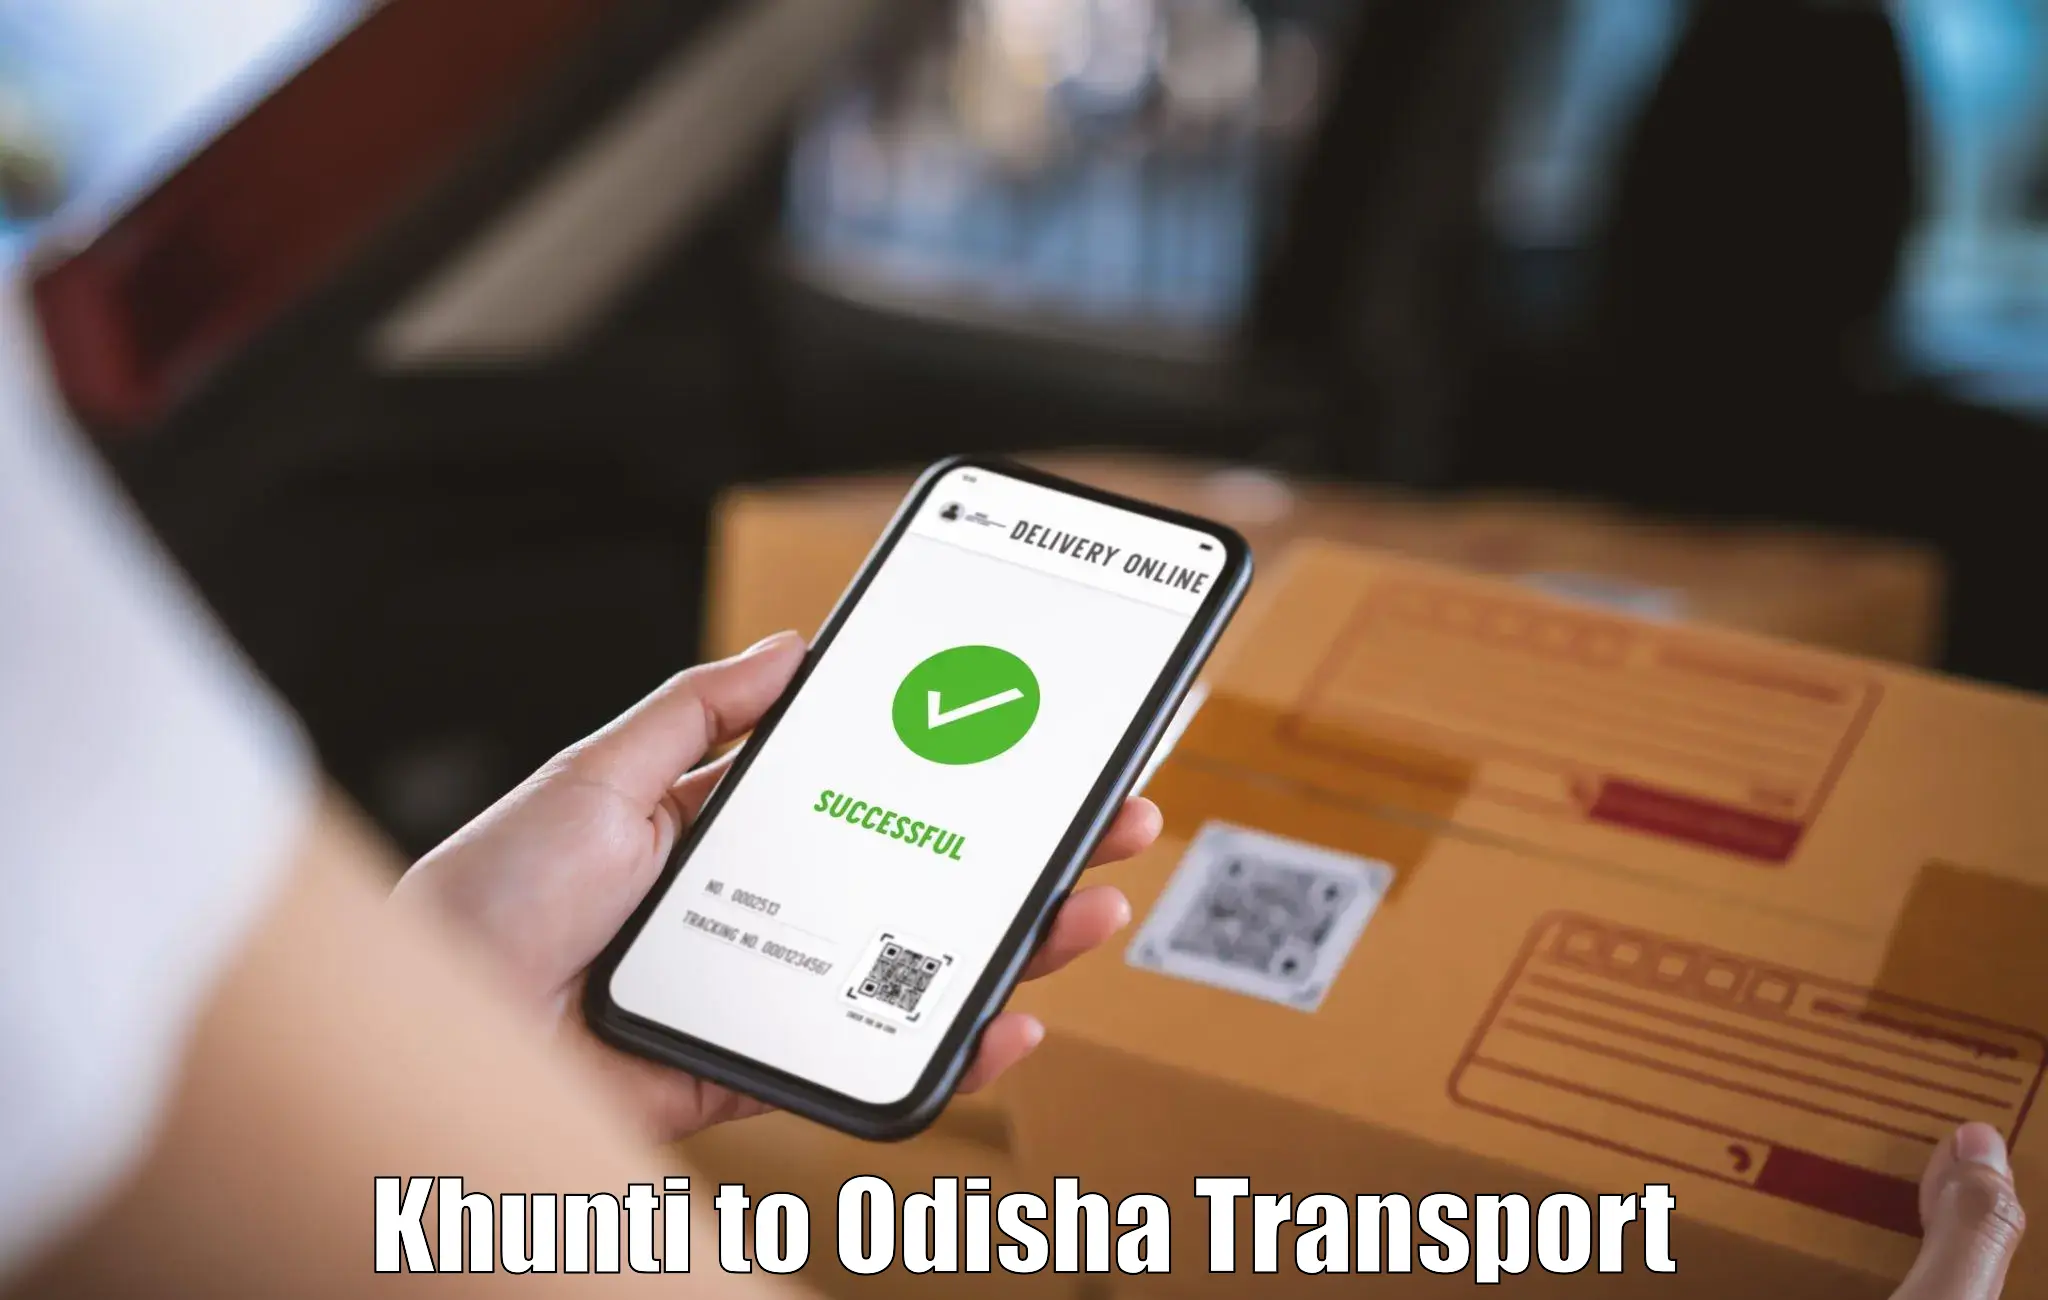 Daily transport service Khunti to Bhutasarasingi